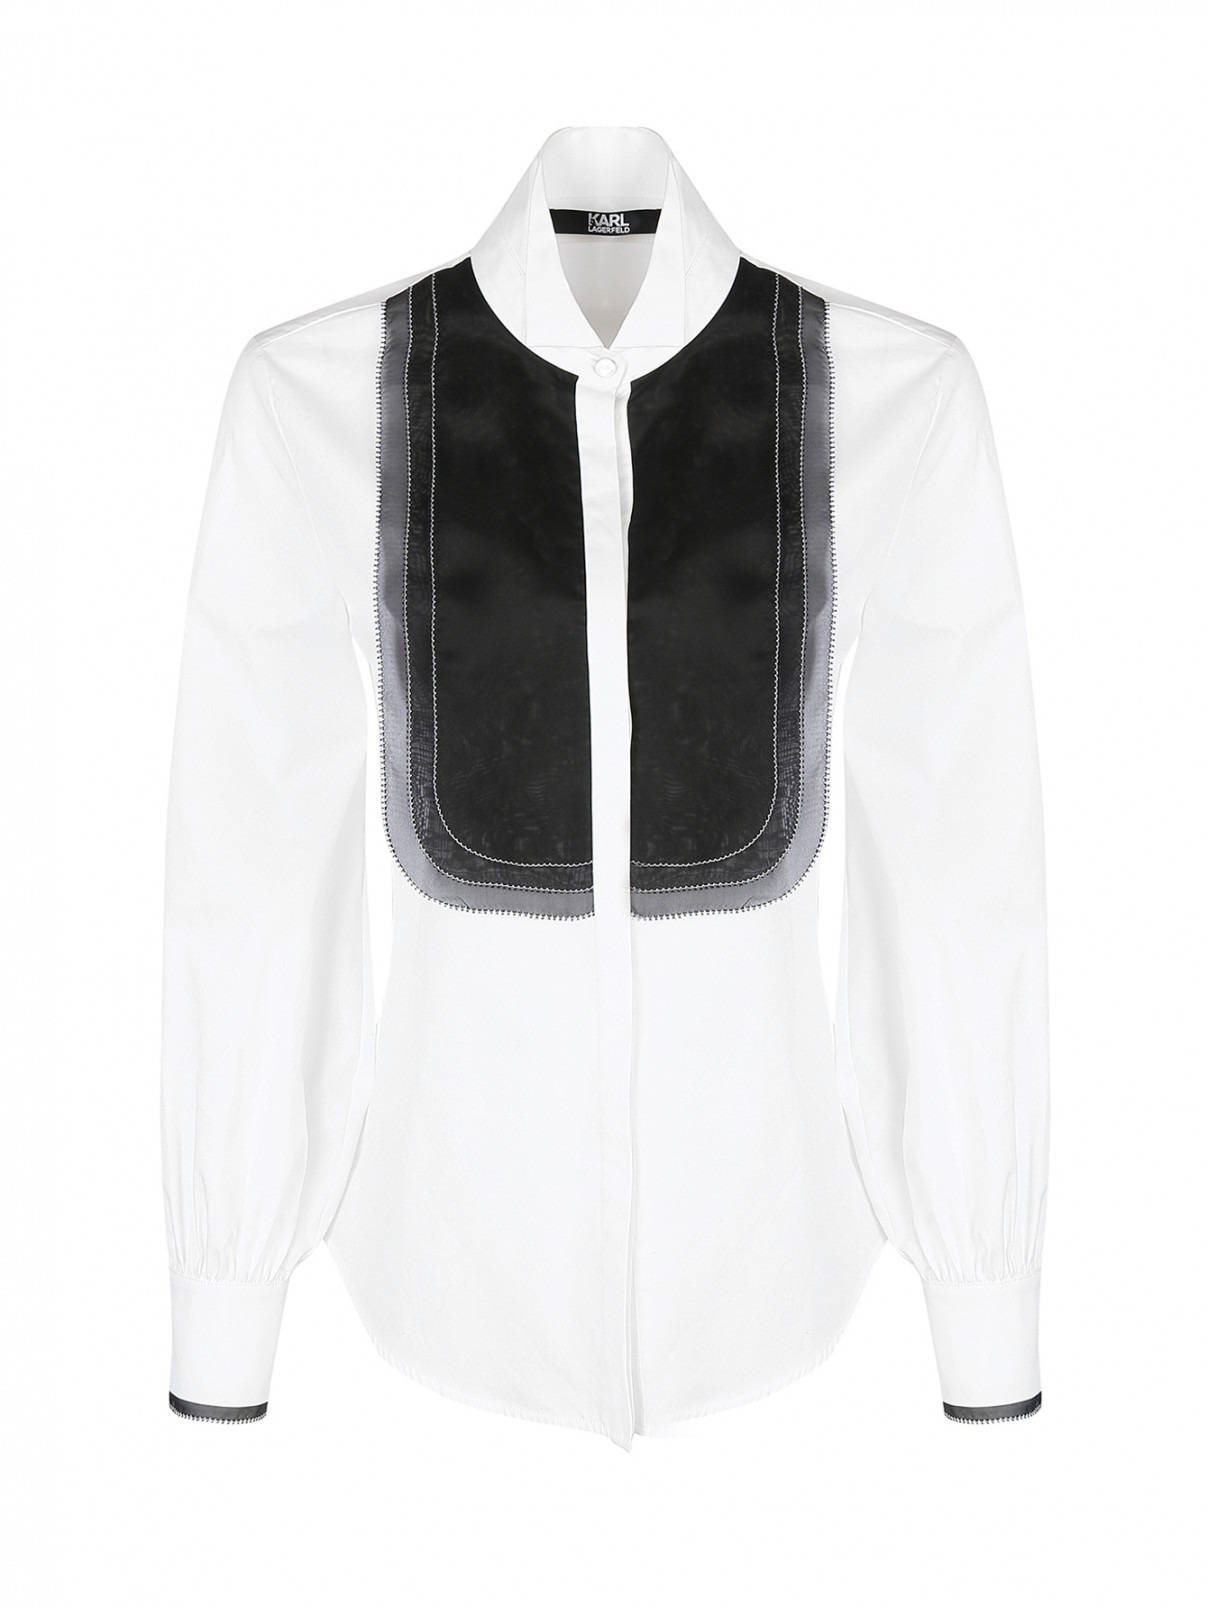 Блуза хлопковая, с декоративной отделкой воротника Karl Lagerfeld  –  Общий вид  – Цвет:  Белый